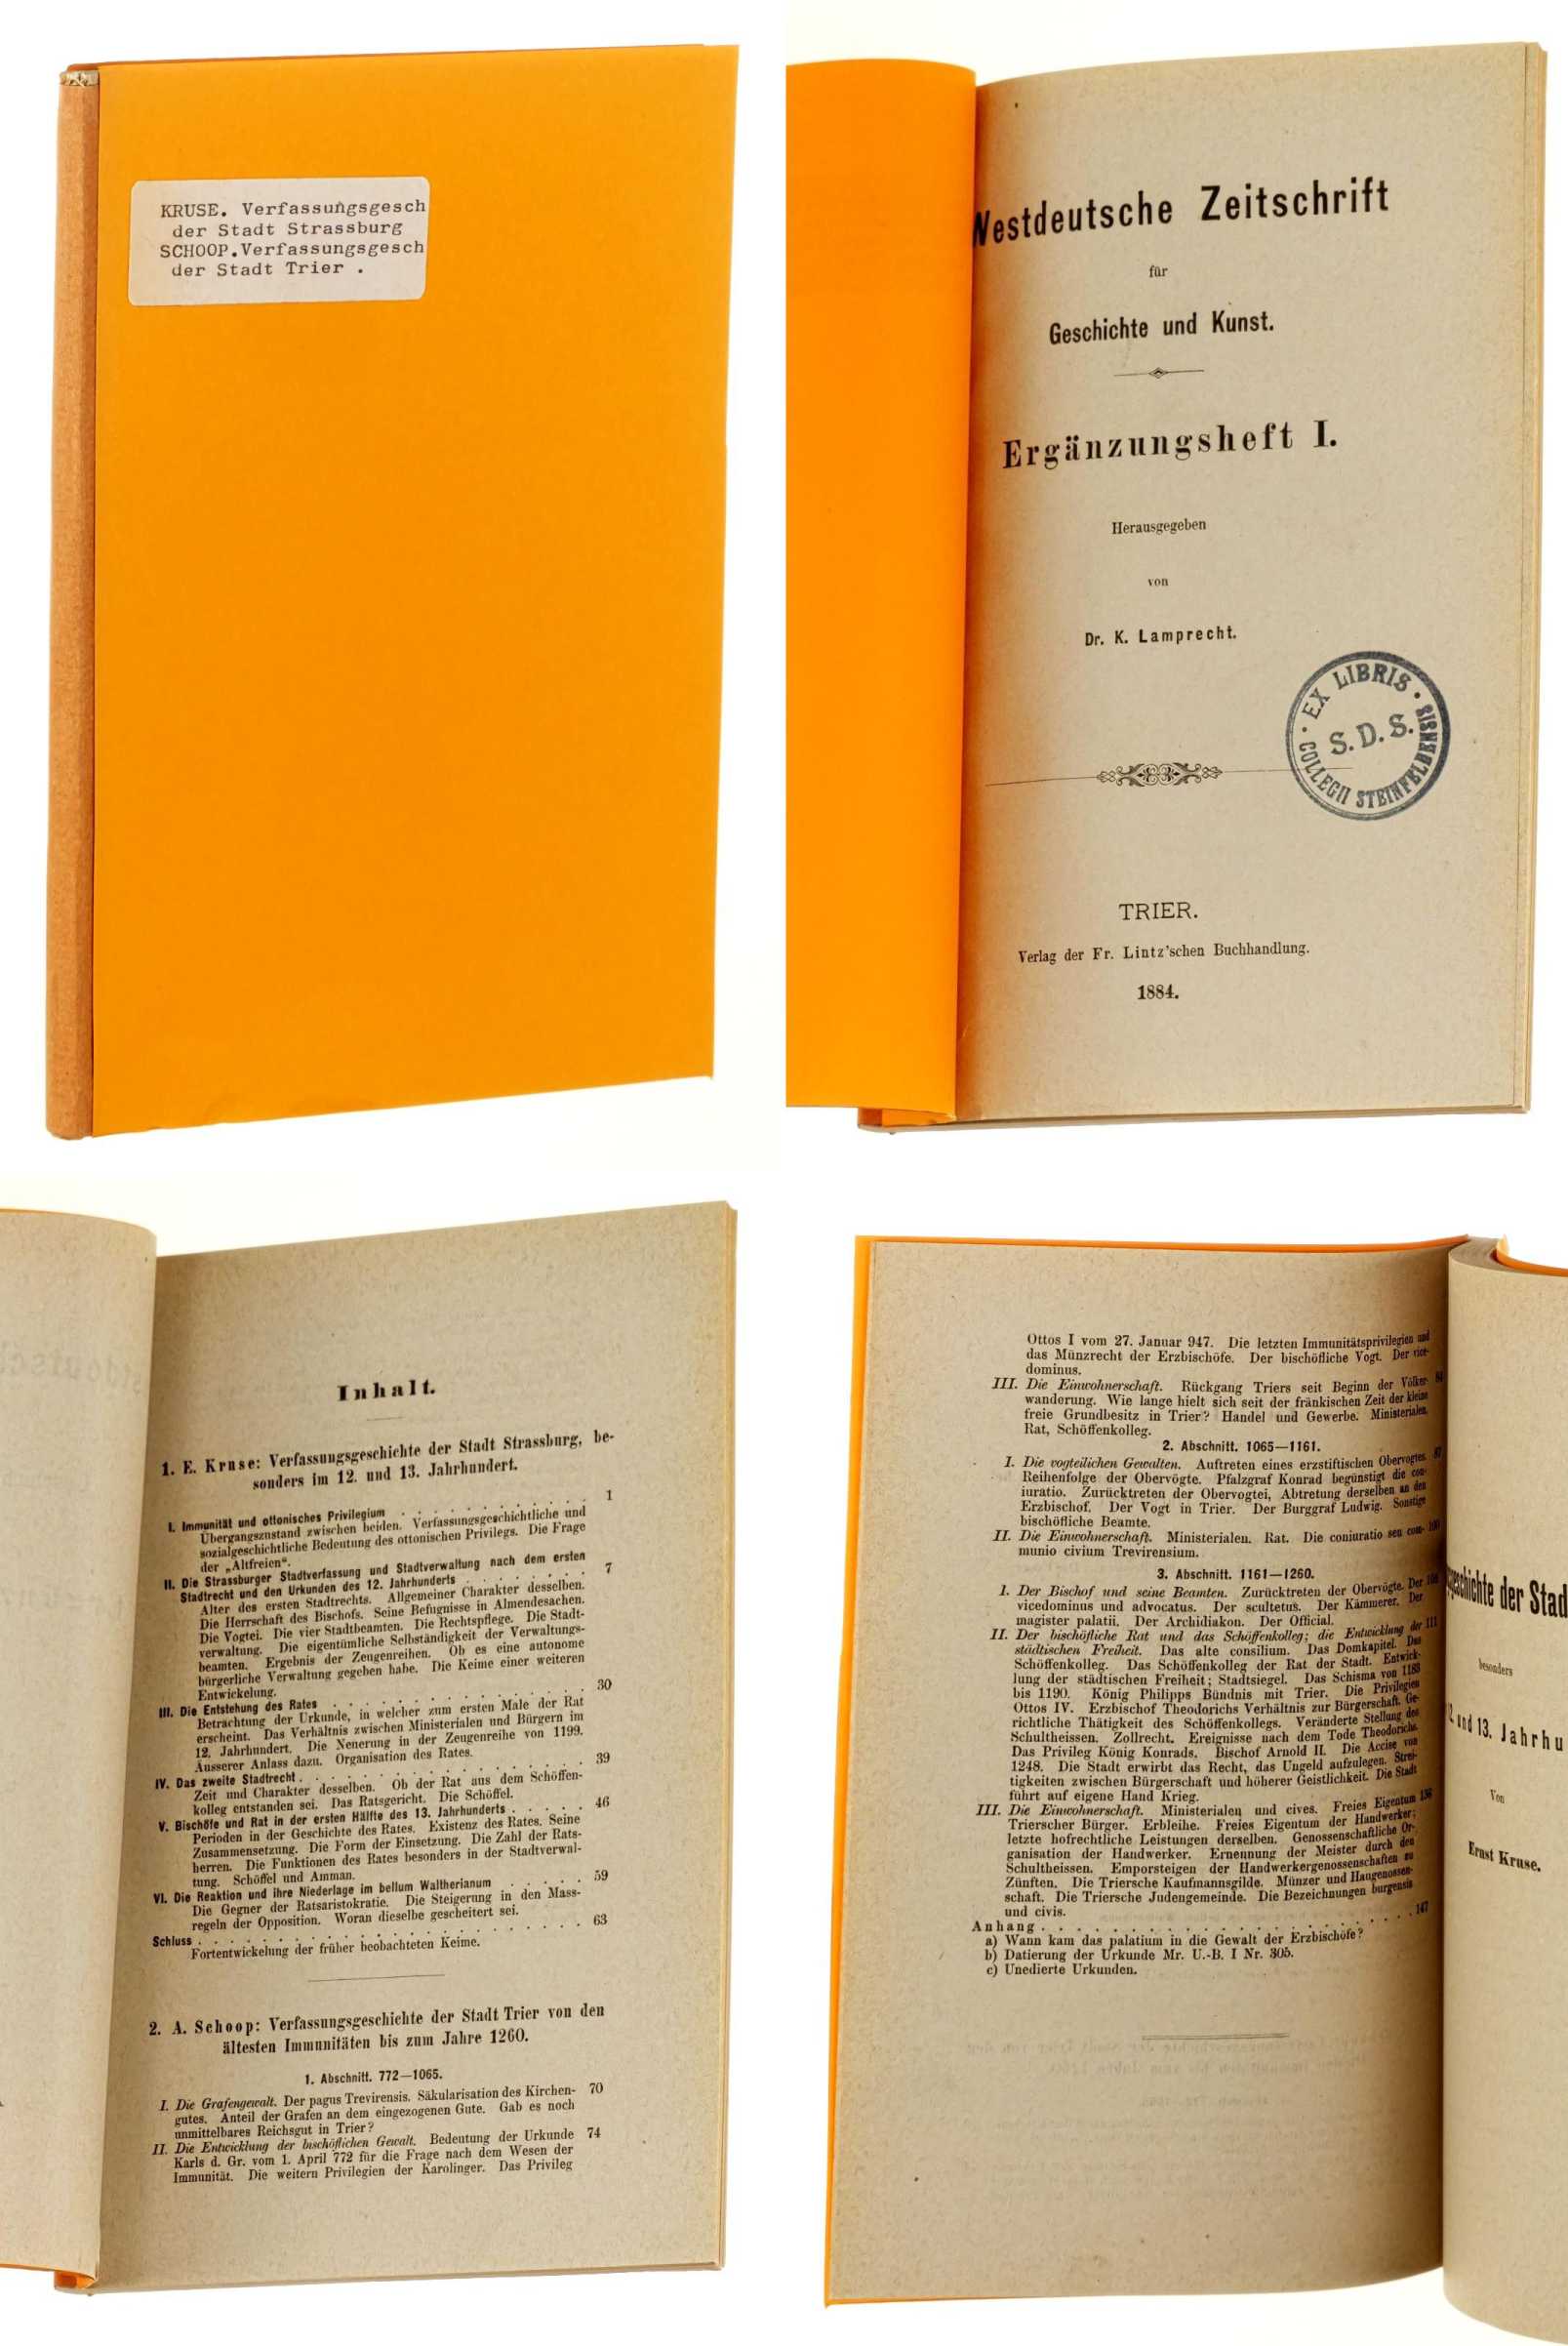   Westdeutsche Zeitschrift für Geschichte und Kunst; Ergänzungsheft 1. Hrsg. von K. Lamprecht. 